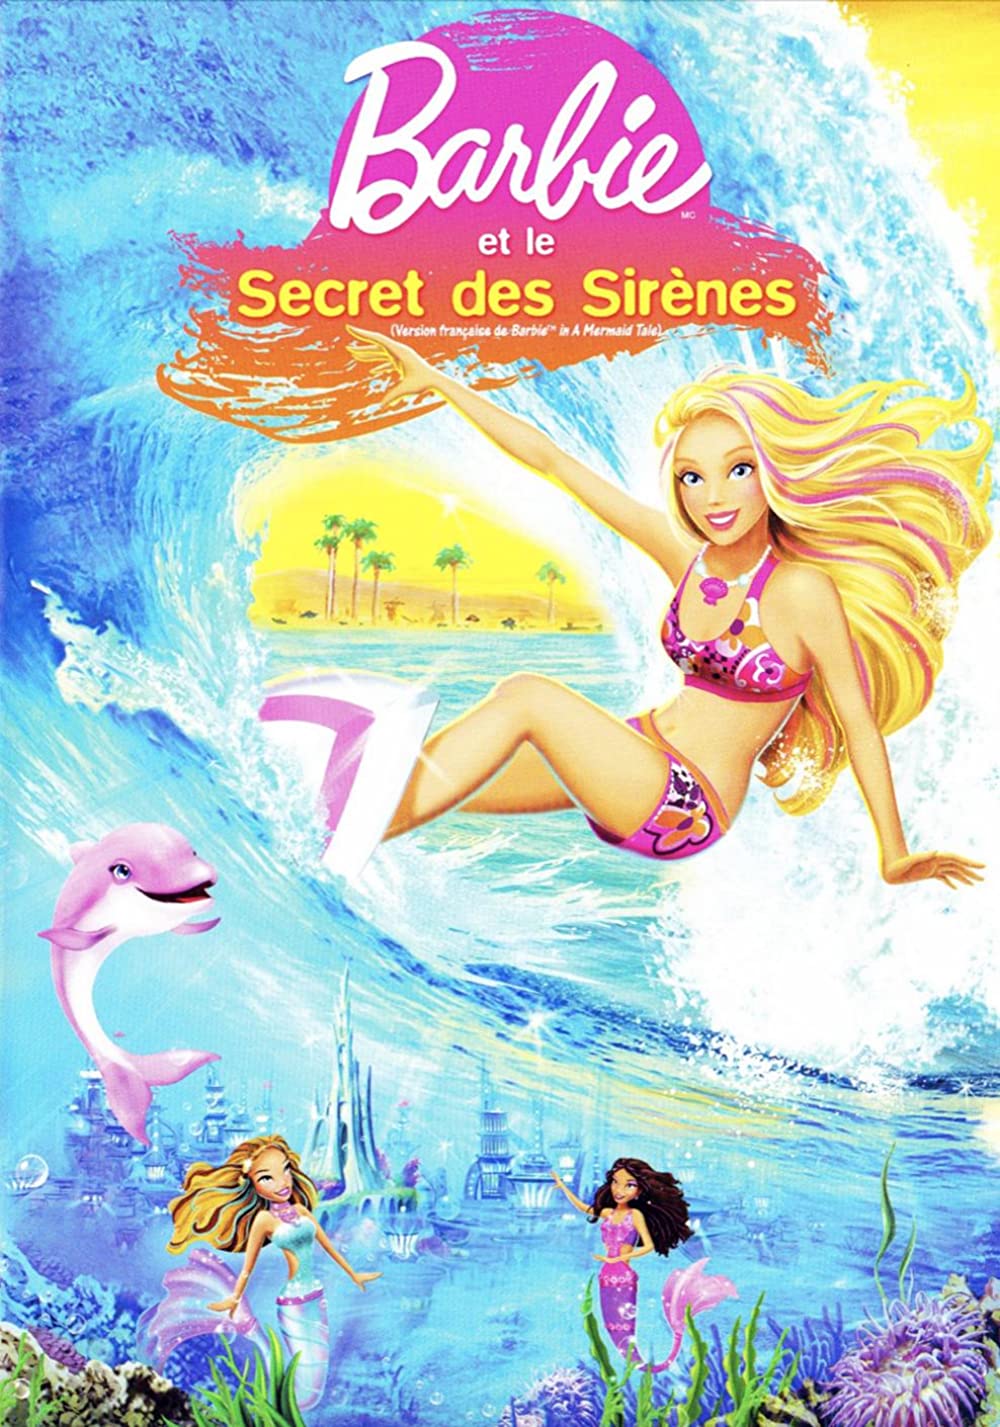 Barbie in a Mermaid Tale Movie Download - Barbie In A Mermaid Tale Hd, Dvd